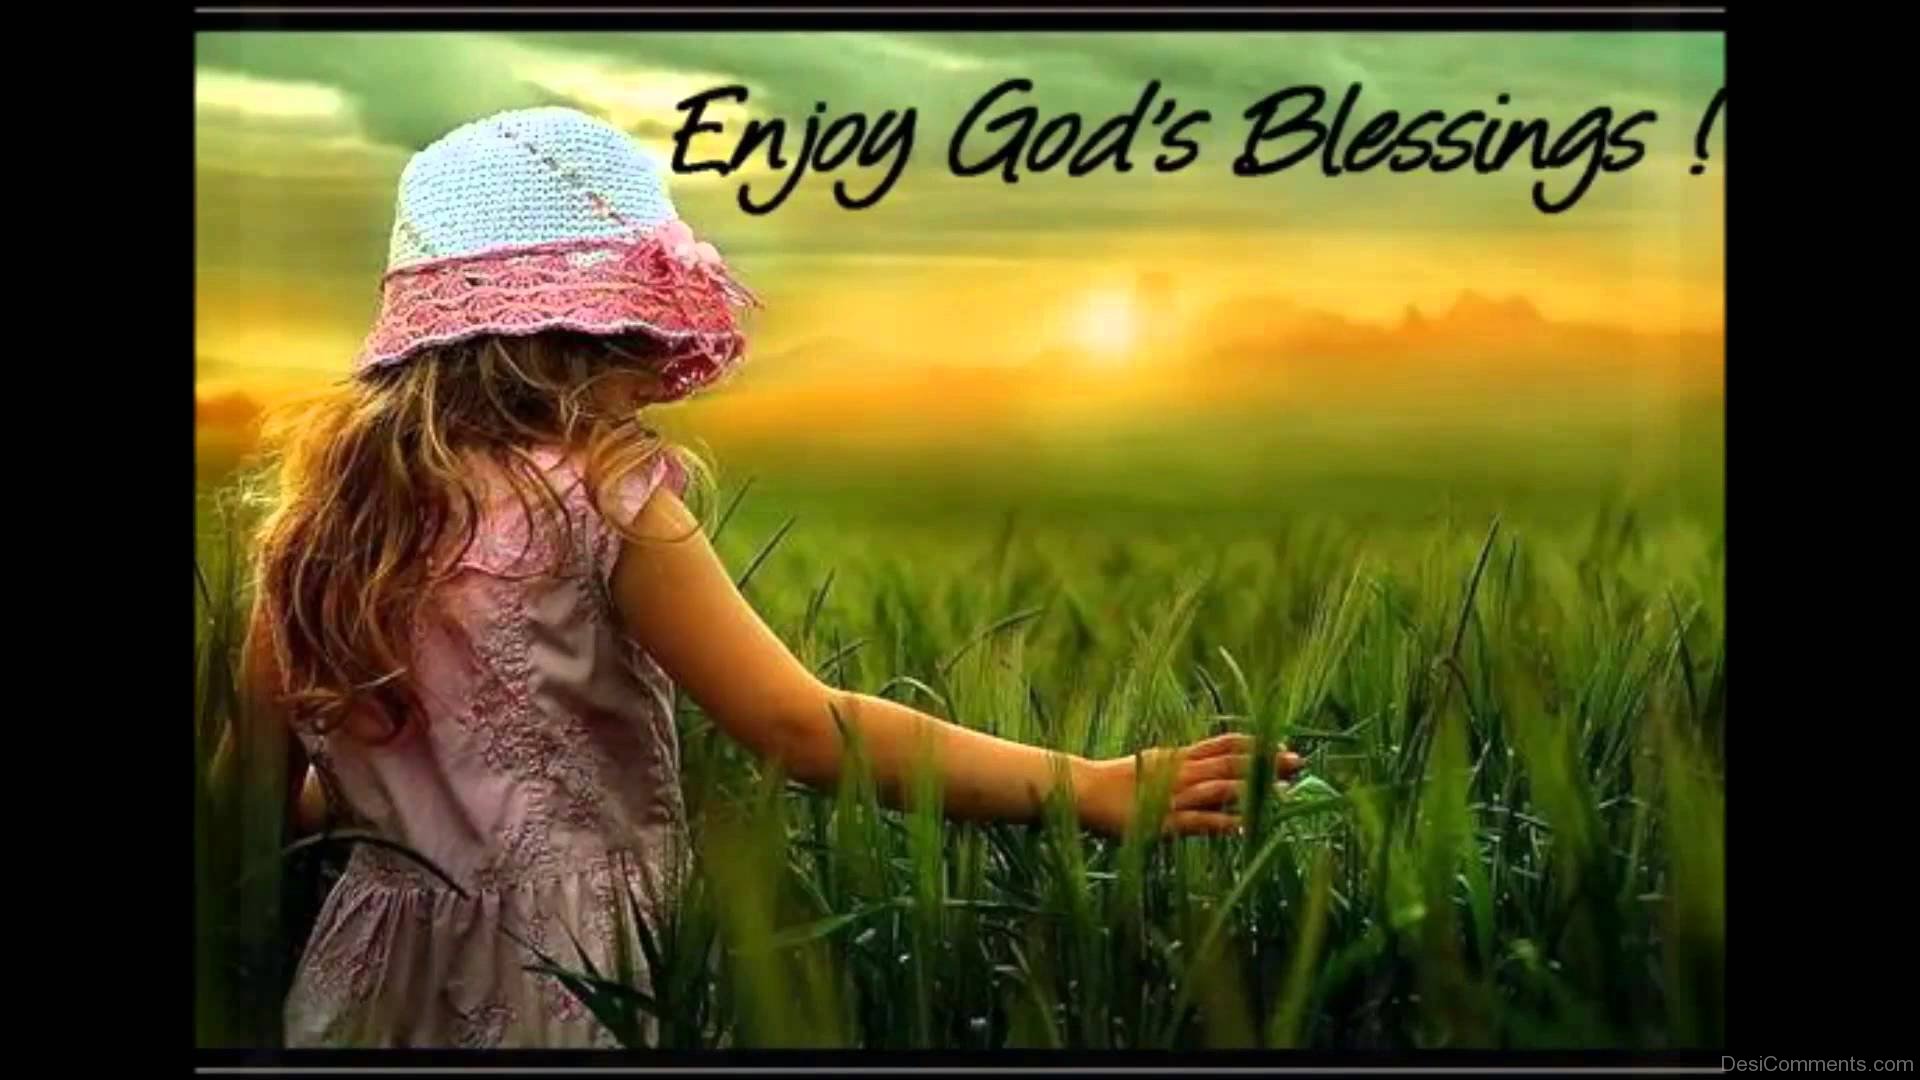 Enjoy-Gods-Blessings.jpg